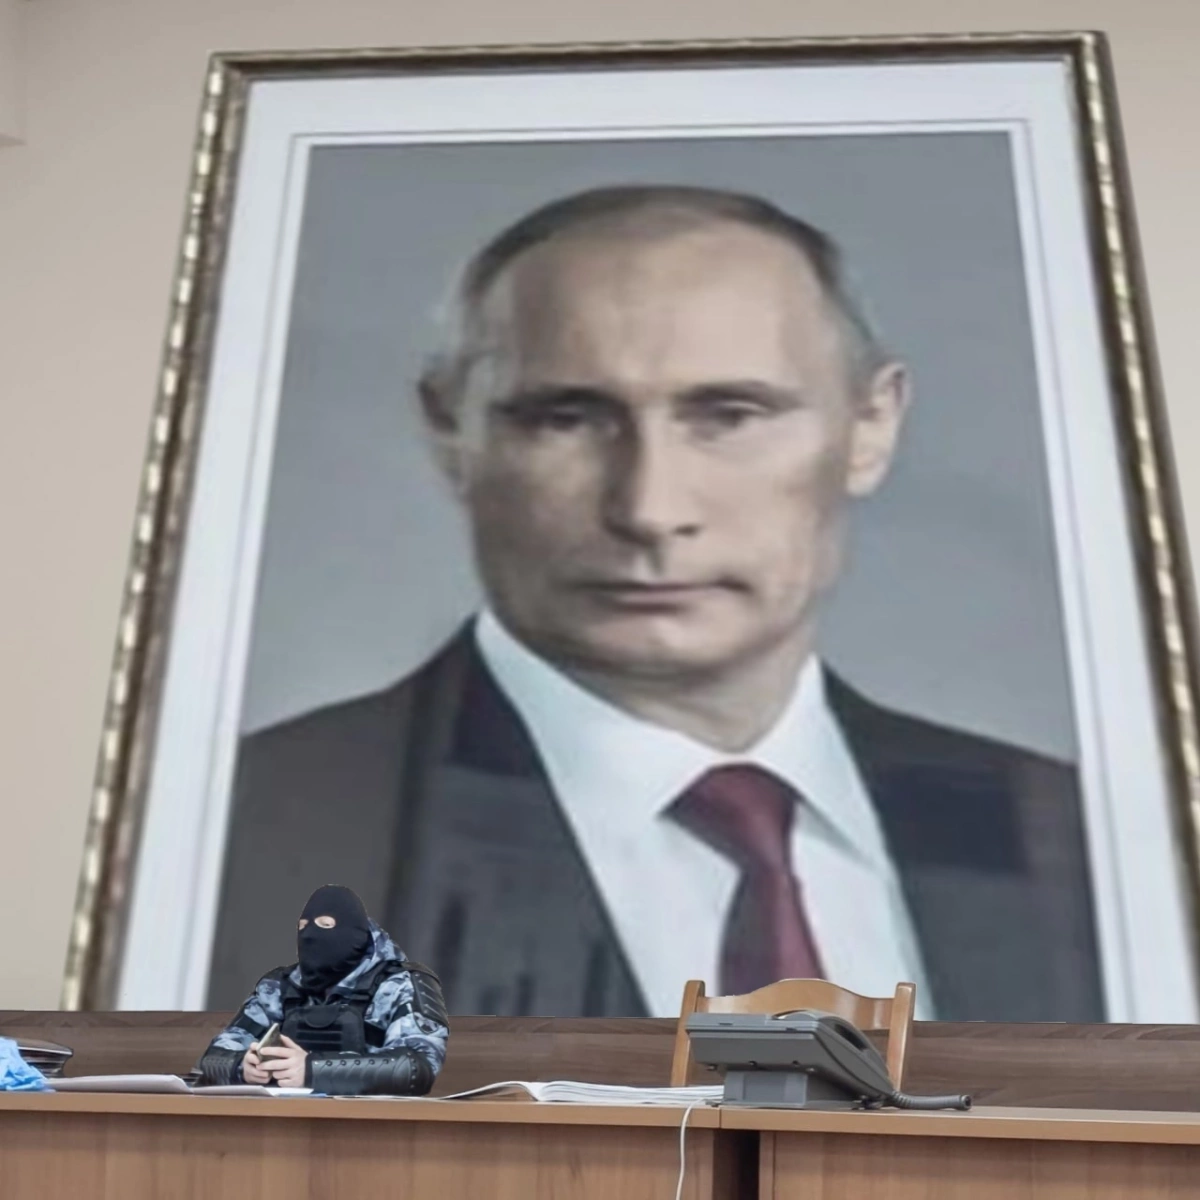 Фото Ног Журналистки На Фоне Путина